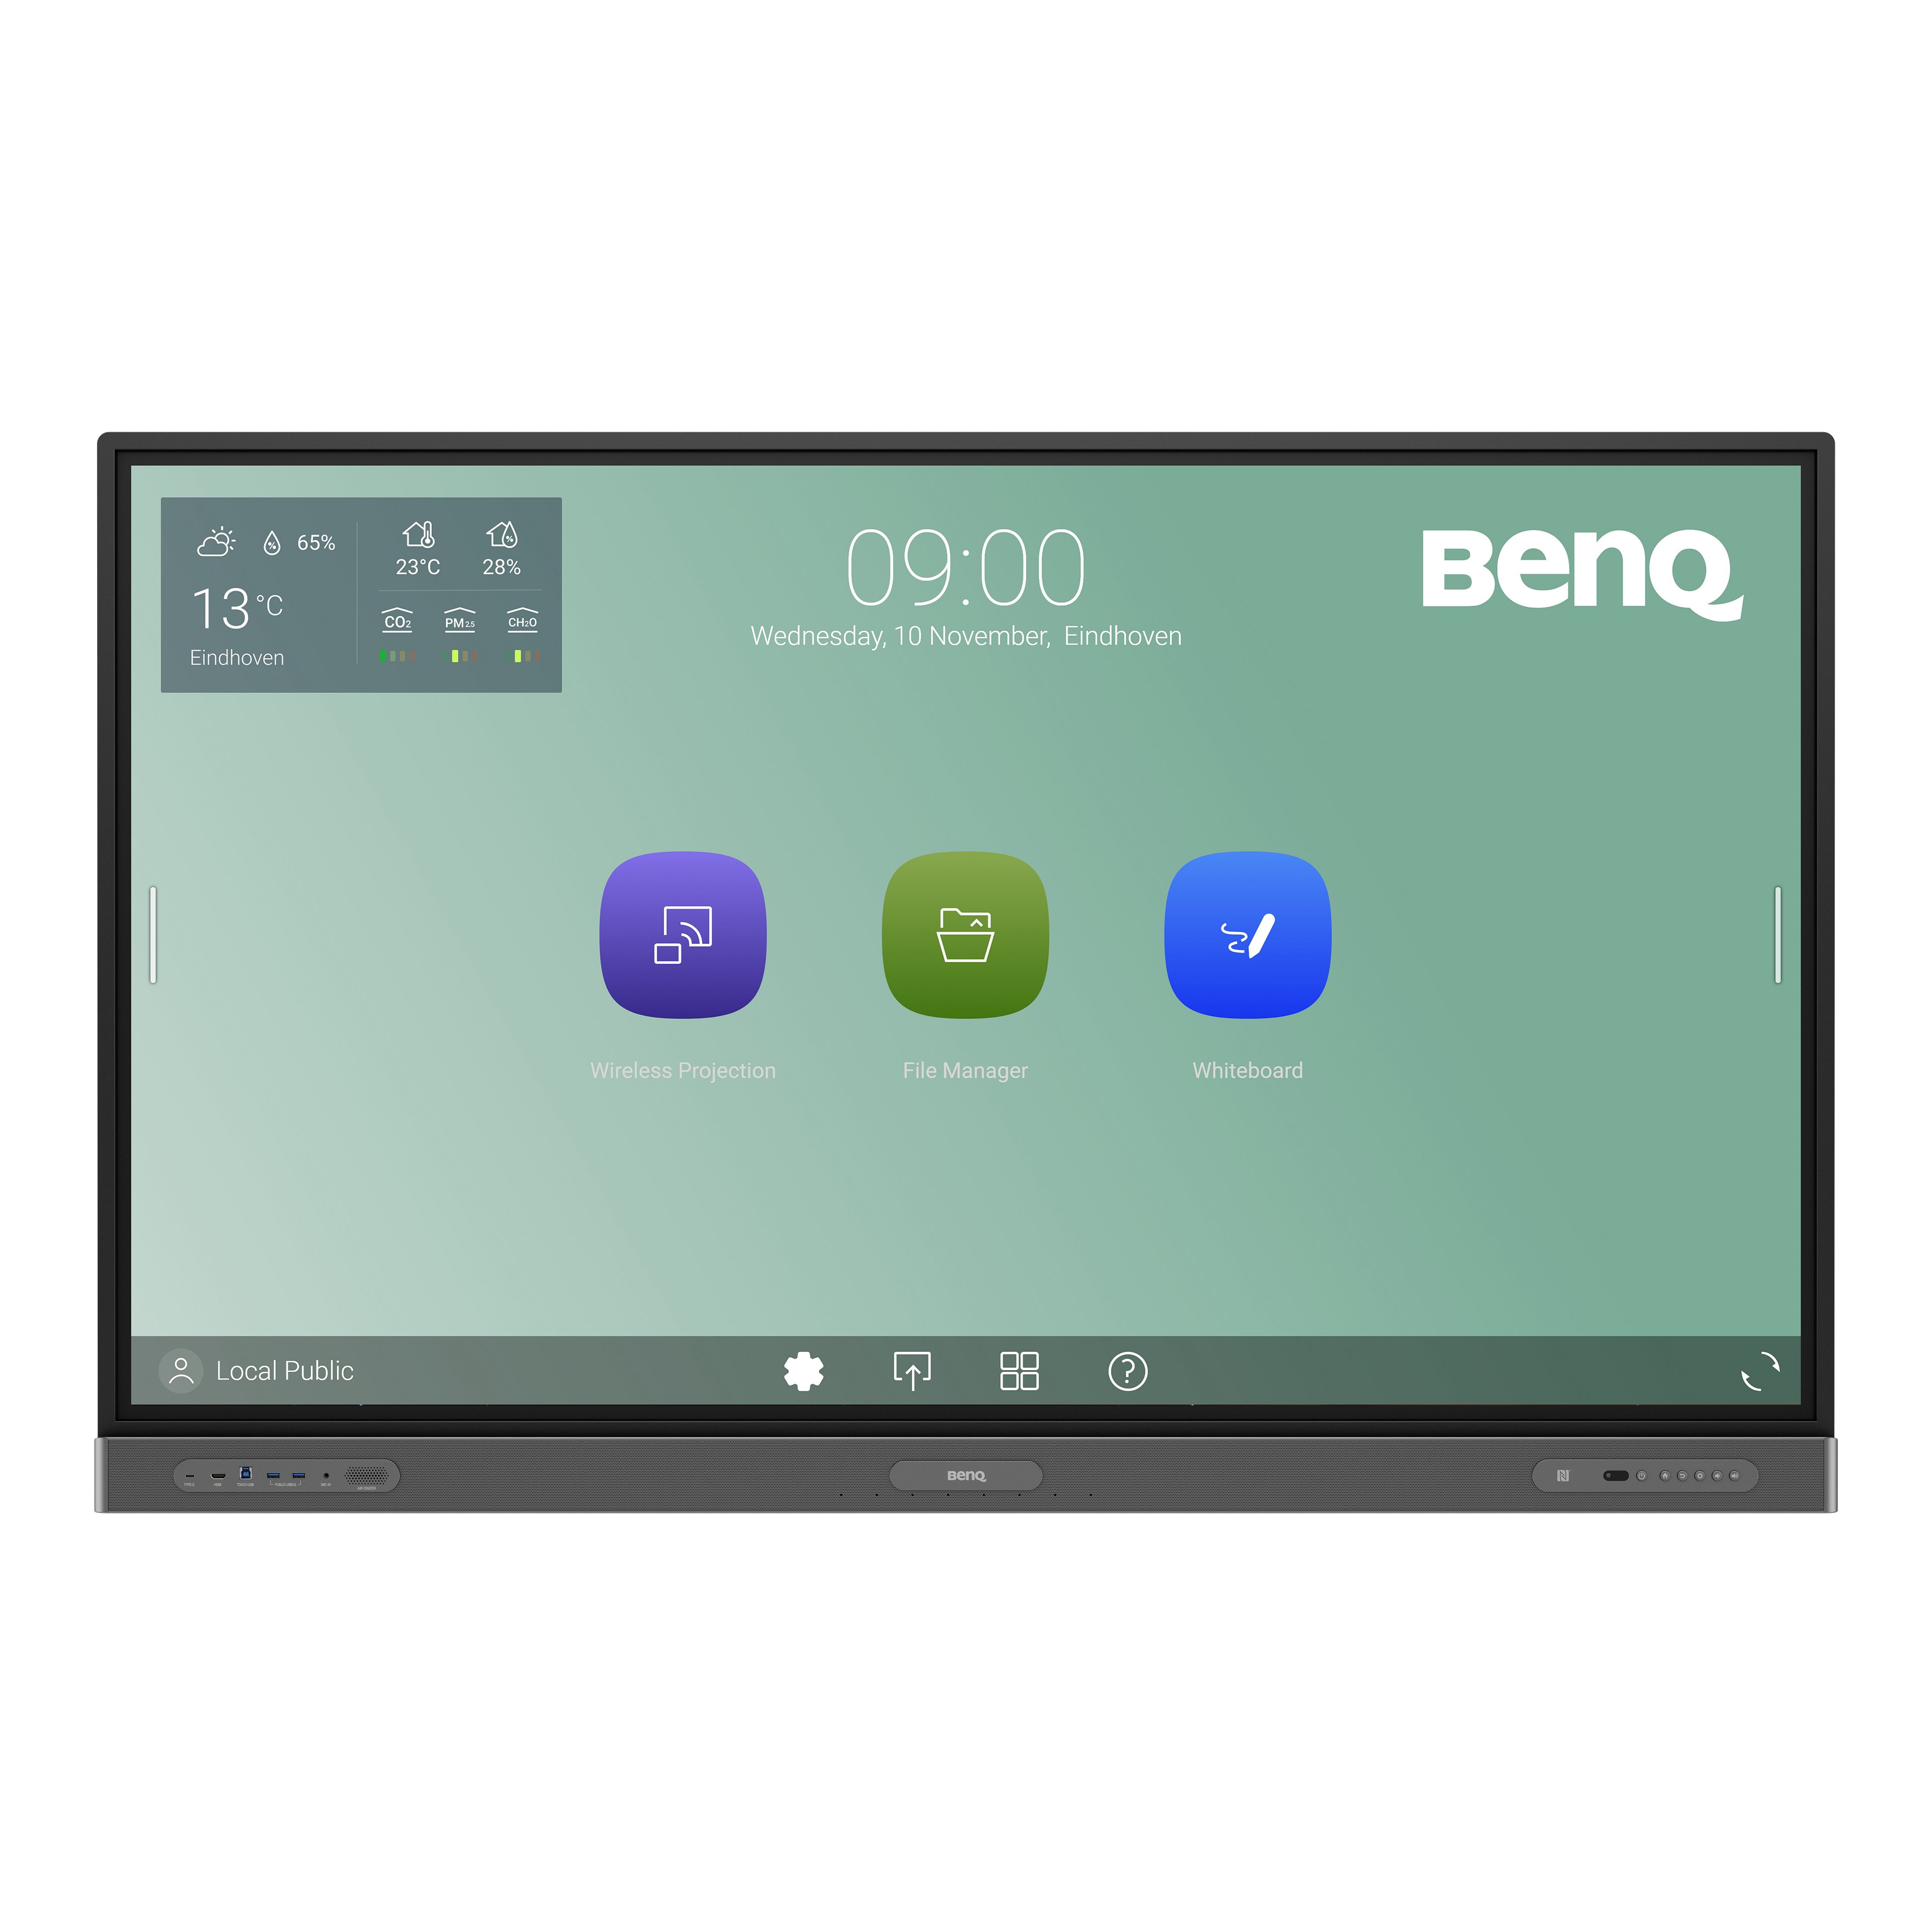 BenQ RP8603 Education Interactive Display mit keimresistentem Bildschirm und Stift, entwickelt für Hybrid- und Remote-Klassenzimmer